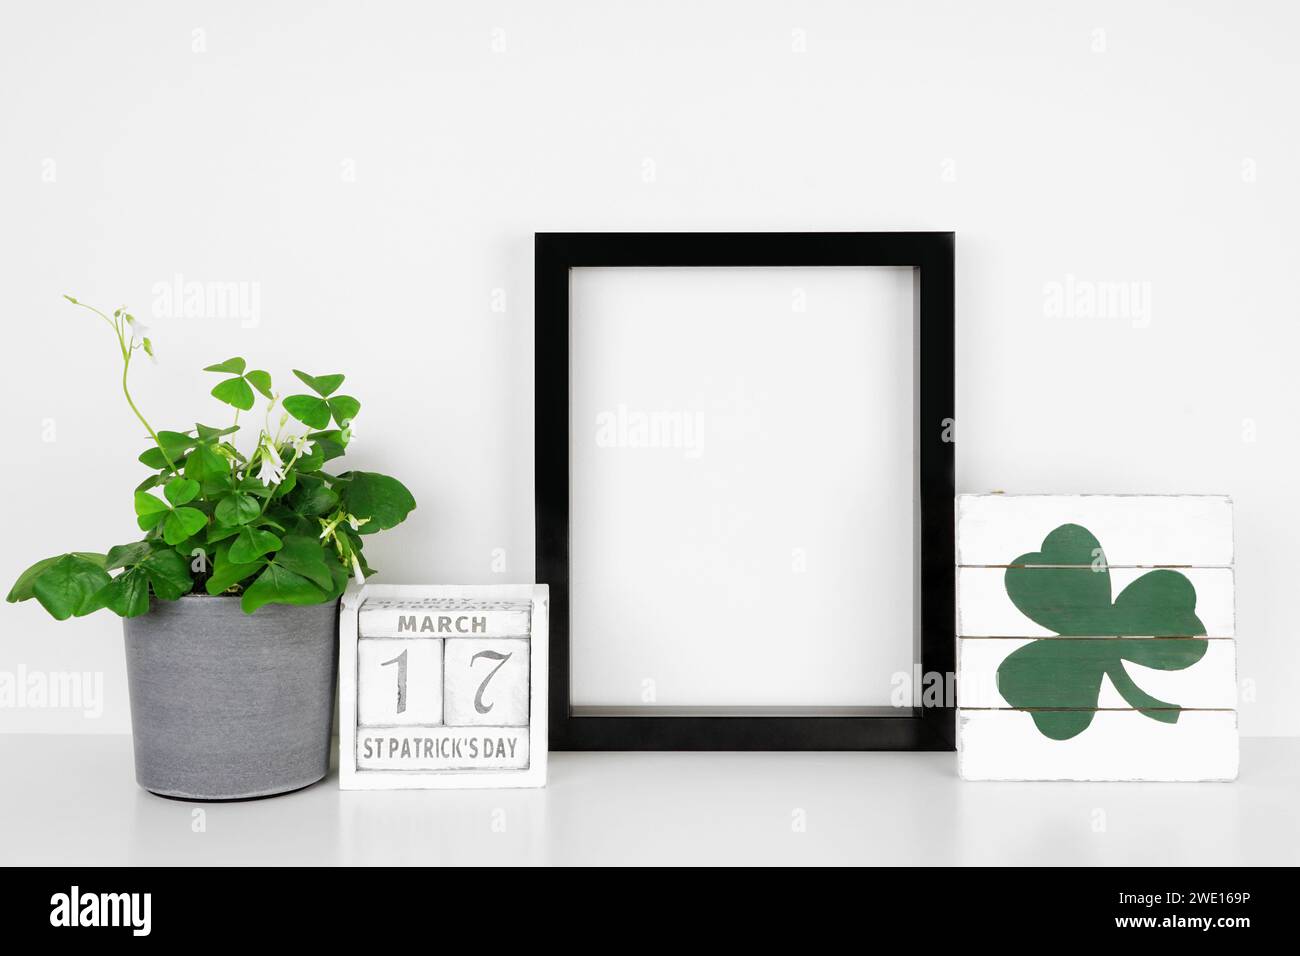 Schwarzer Rahmen mit St. Patricks Day-Dekor auf weißem Regal. Shamrock-Pflanze, schäbiger, schicker Holzkalender und Schild. Portraitrahmen gegen eine weiße Wa Stockfoto